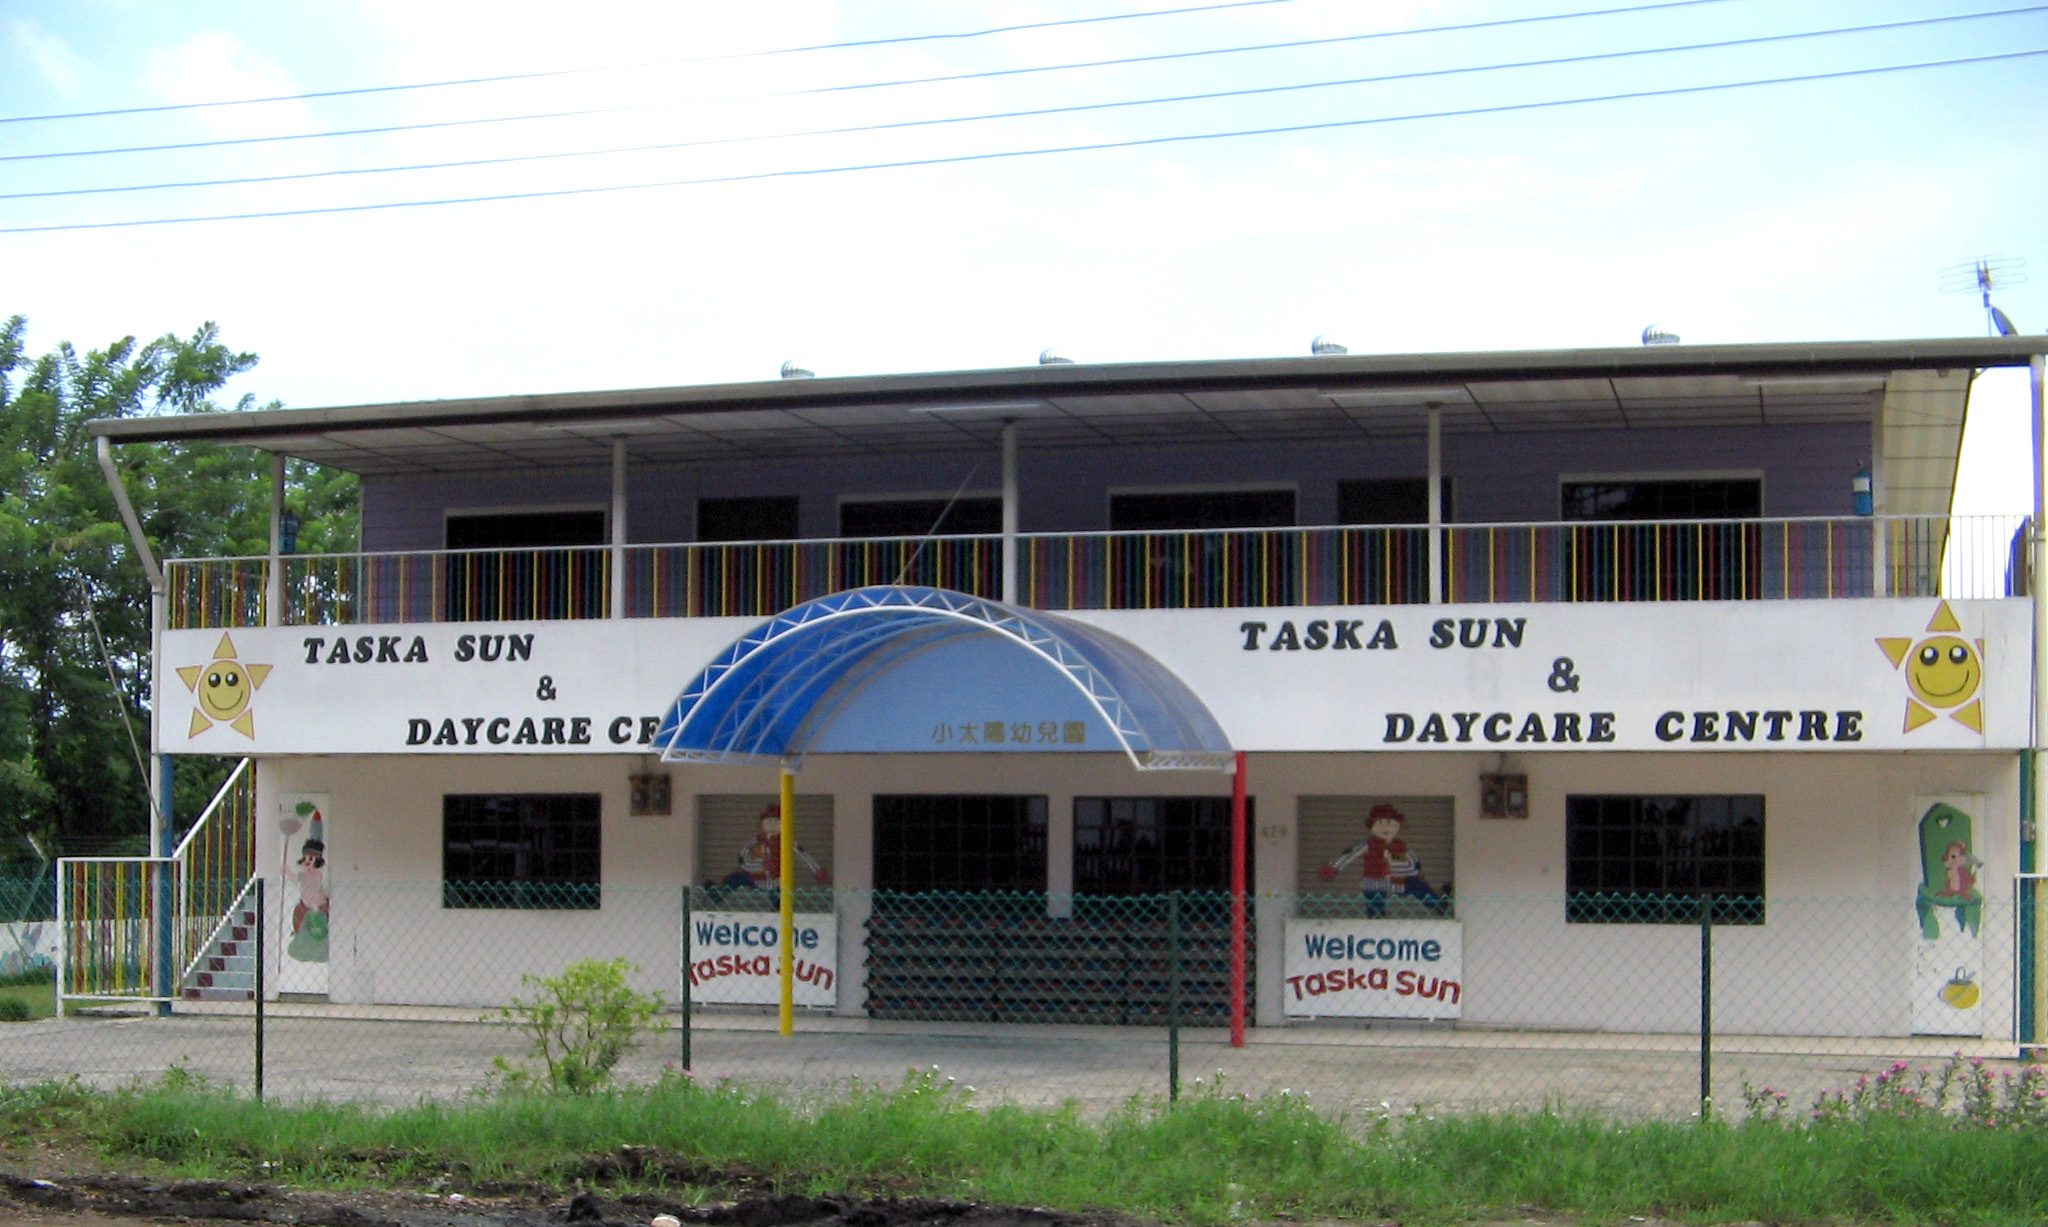 Taska Sun & Day Care Centre